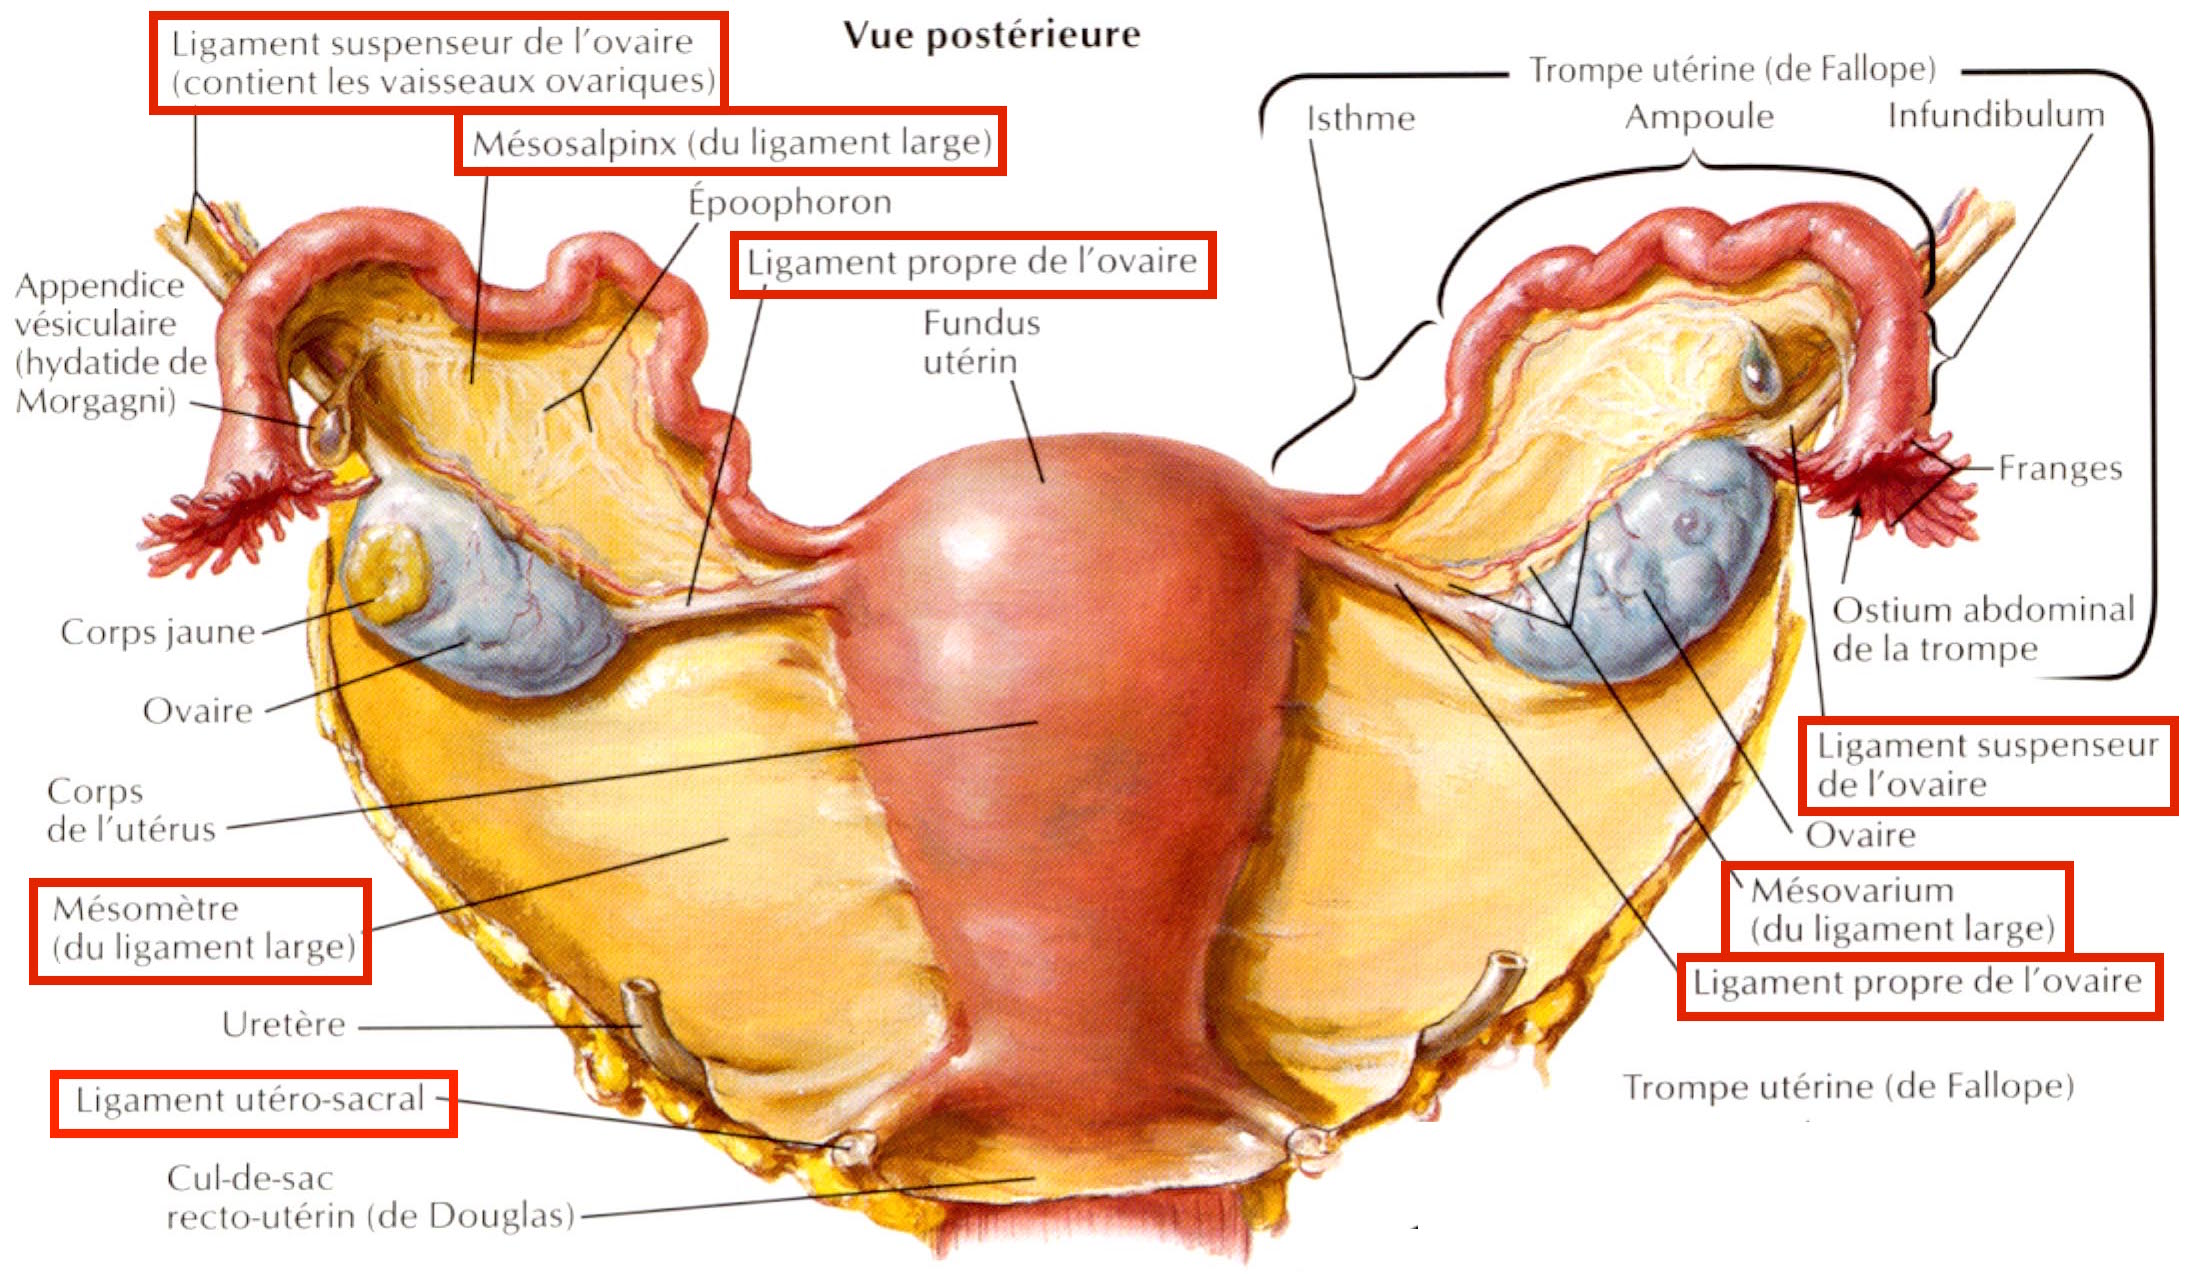 Ligaments qui maintiennent l'utérus au bassin et aux autres organes